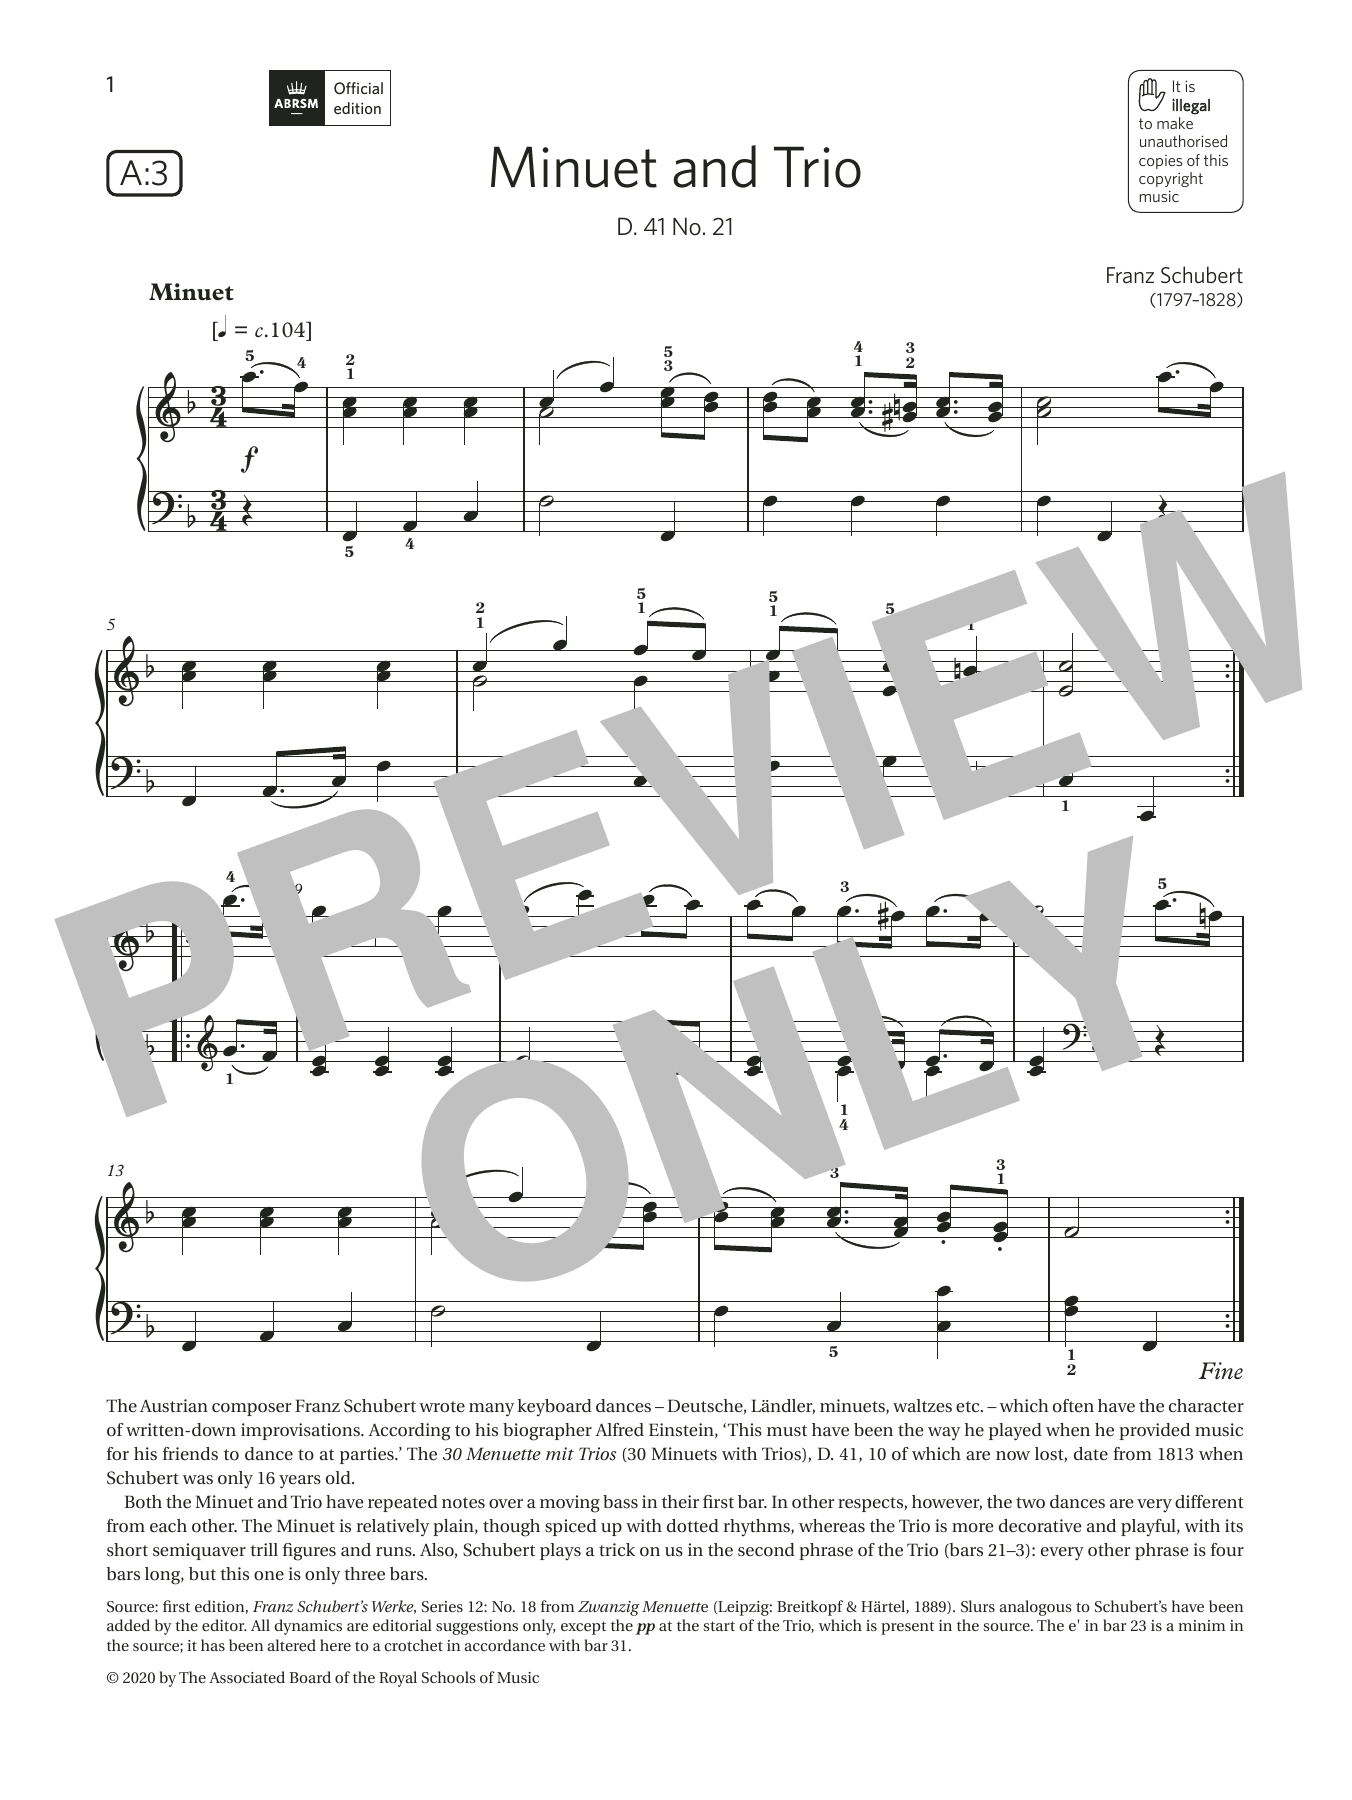 Download Franz Schubert Minuet and Trio (Grade 4, list A3, from Sheet Music